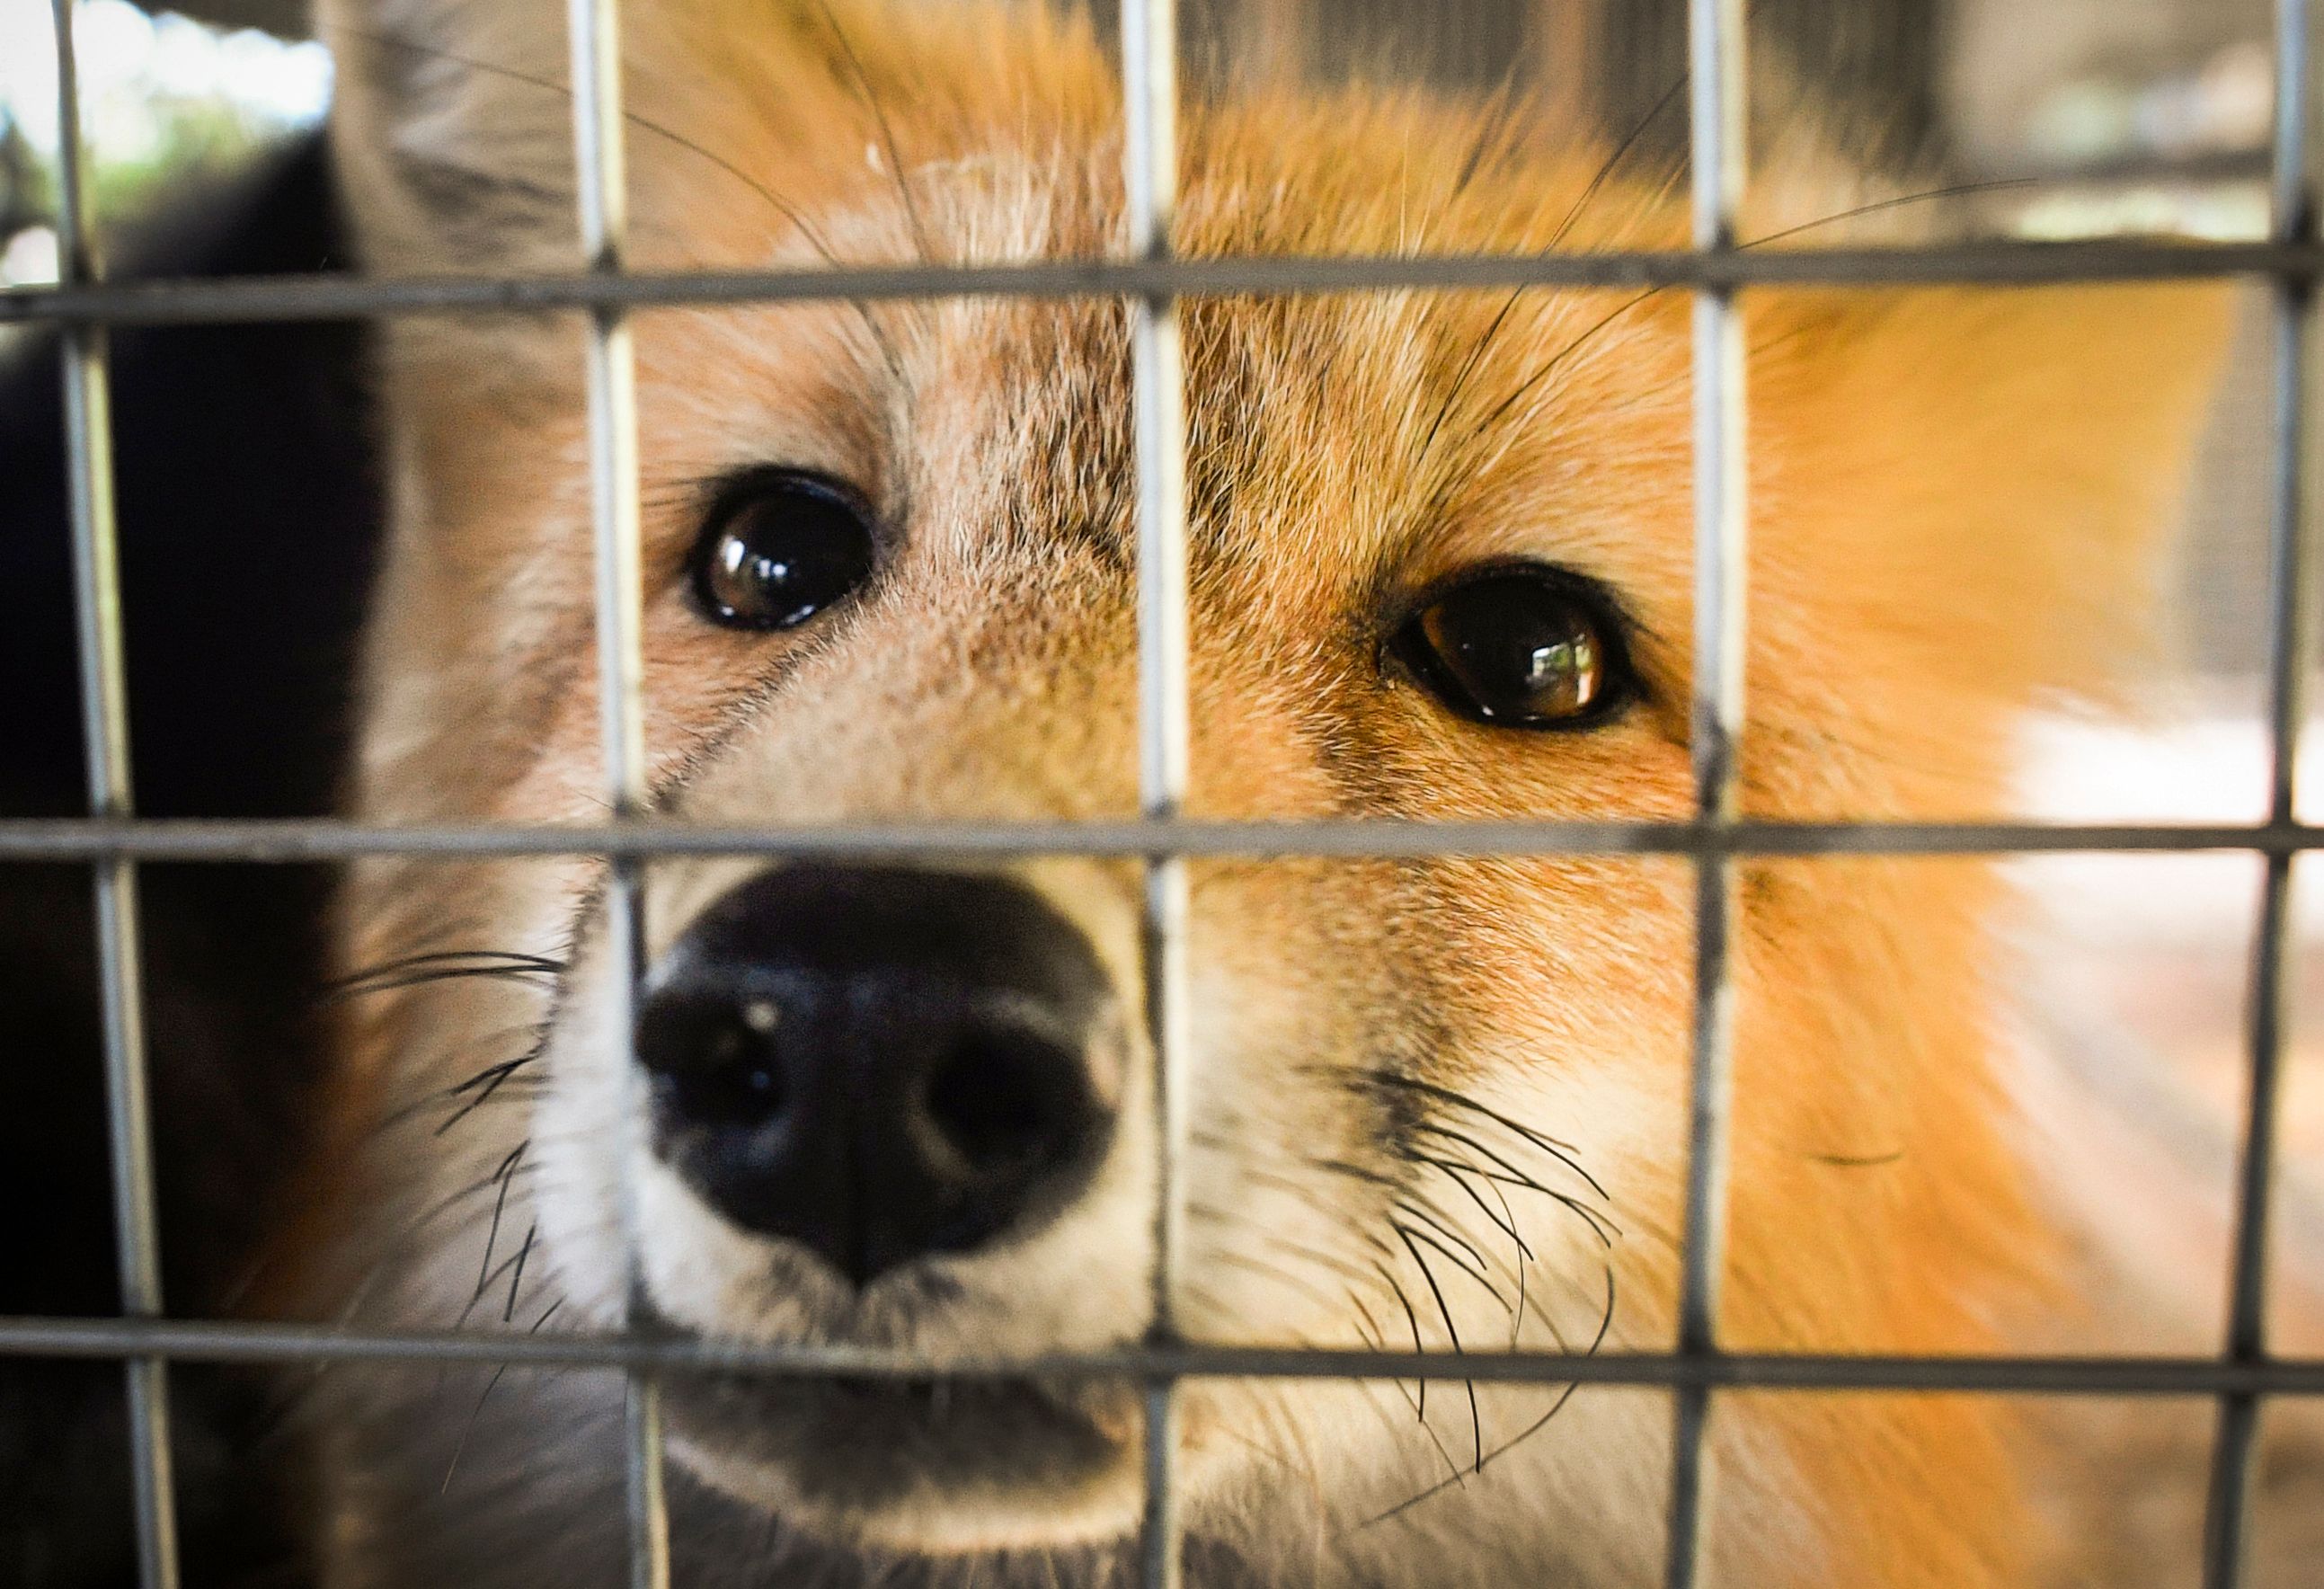 Un zorro observa a través de su jaula en un instituto genética de Rusia dedicado a investigar el comportamiento de los animales. (Foto Prensa Libre: AFP)